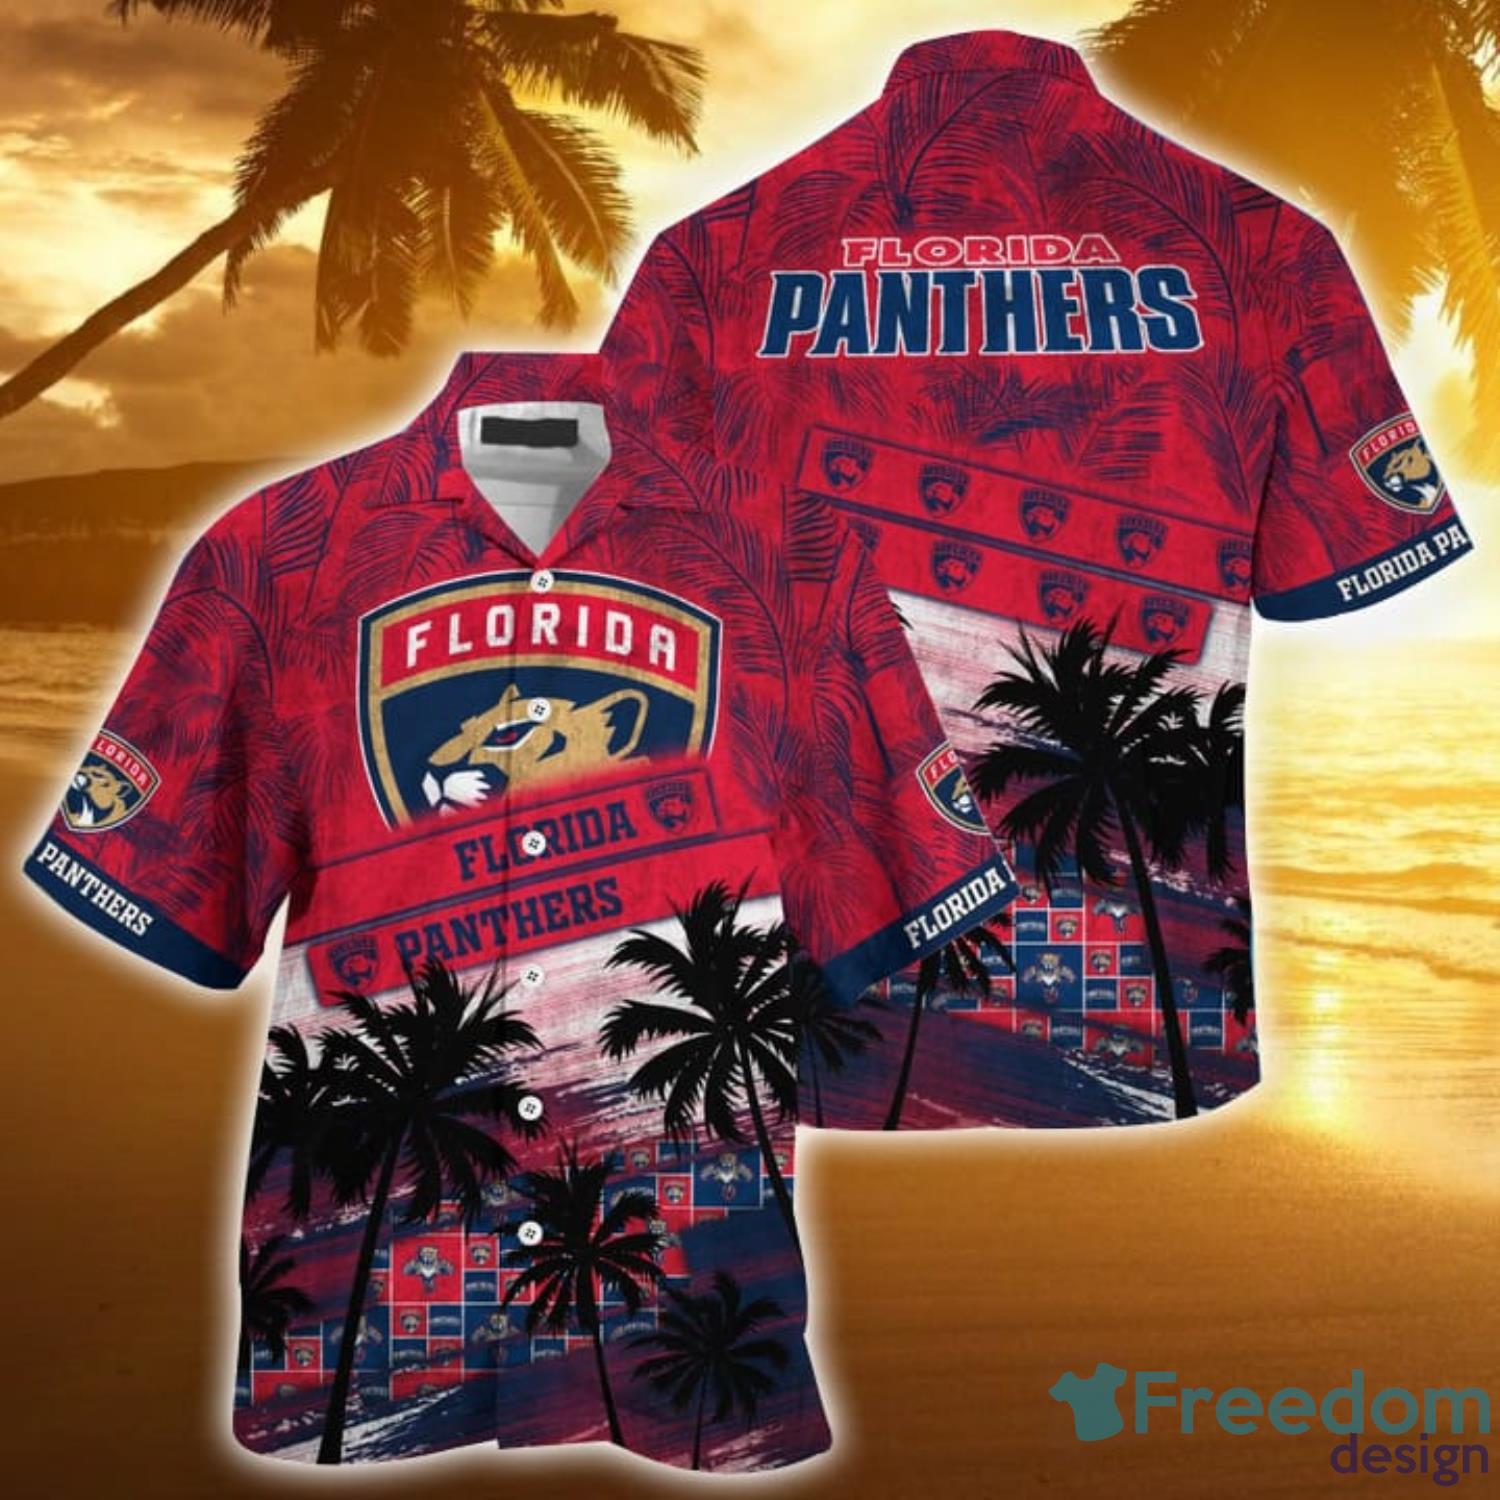 Florida panthers jersey